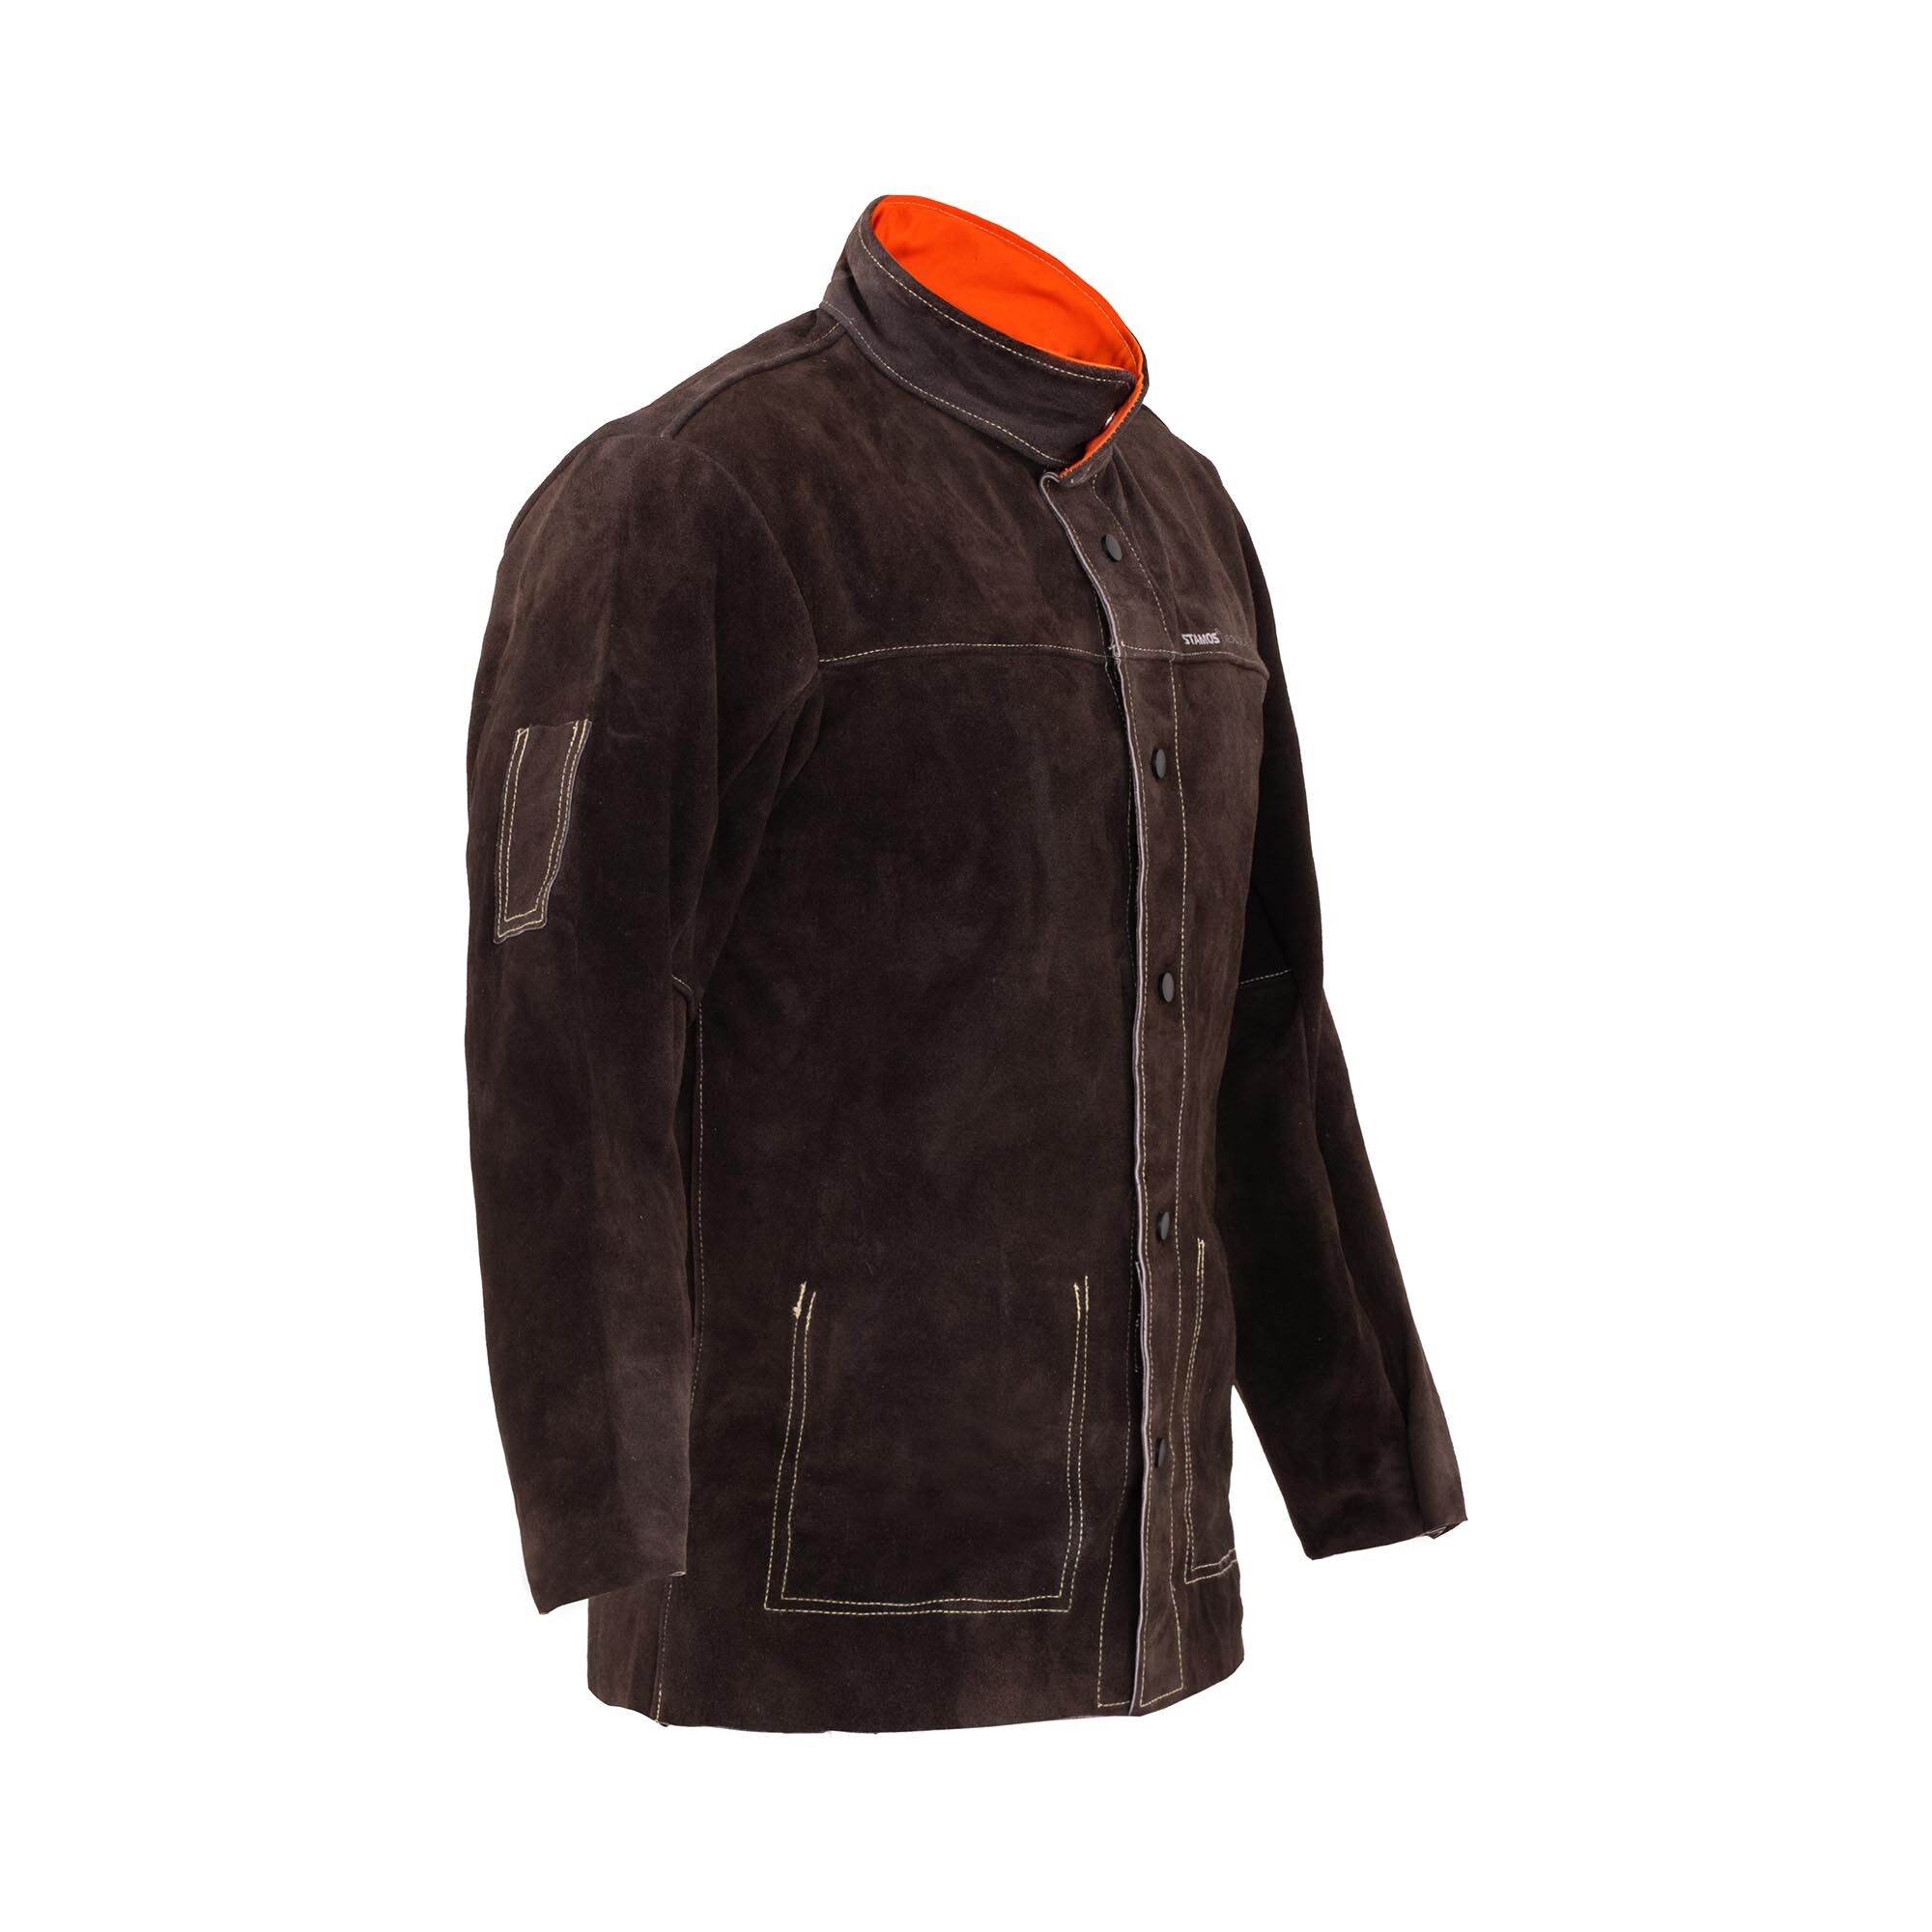 Stamos Welding Group Cow Split Leather Welding Jacket - size XL SWJ01XL